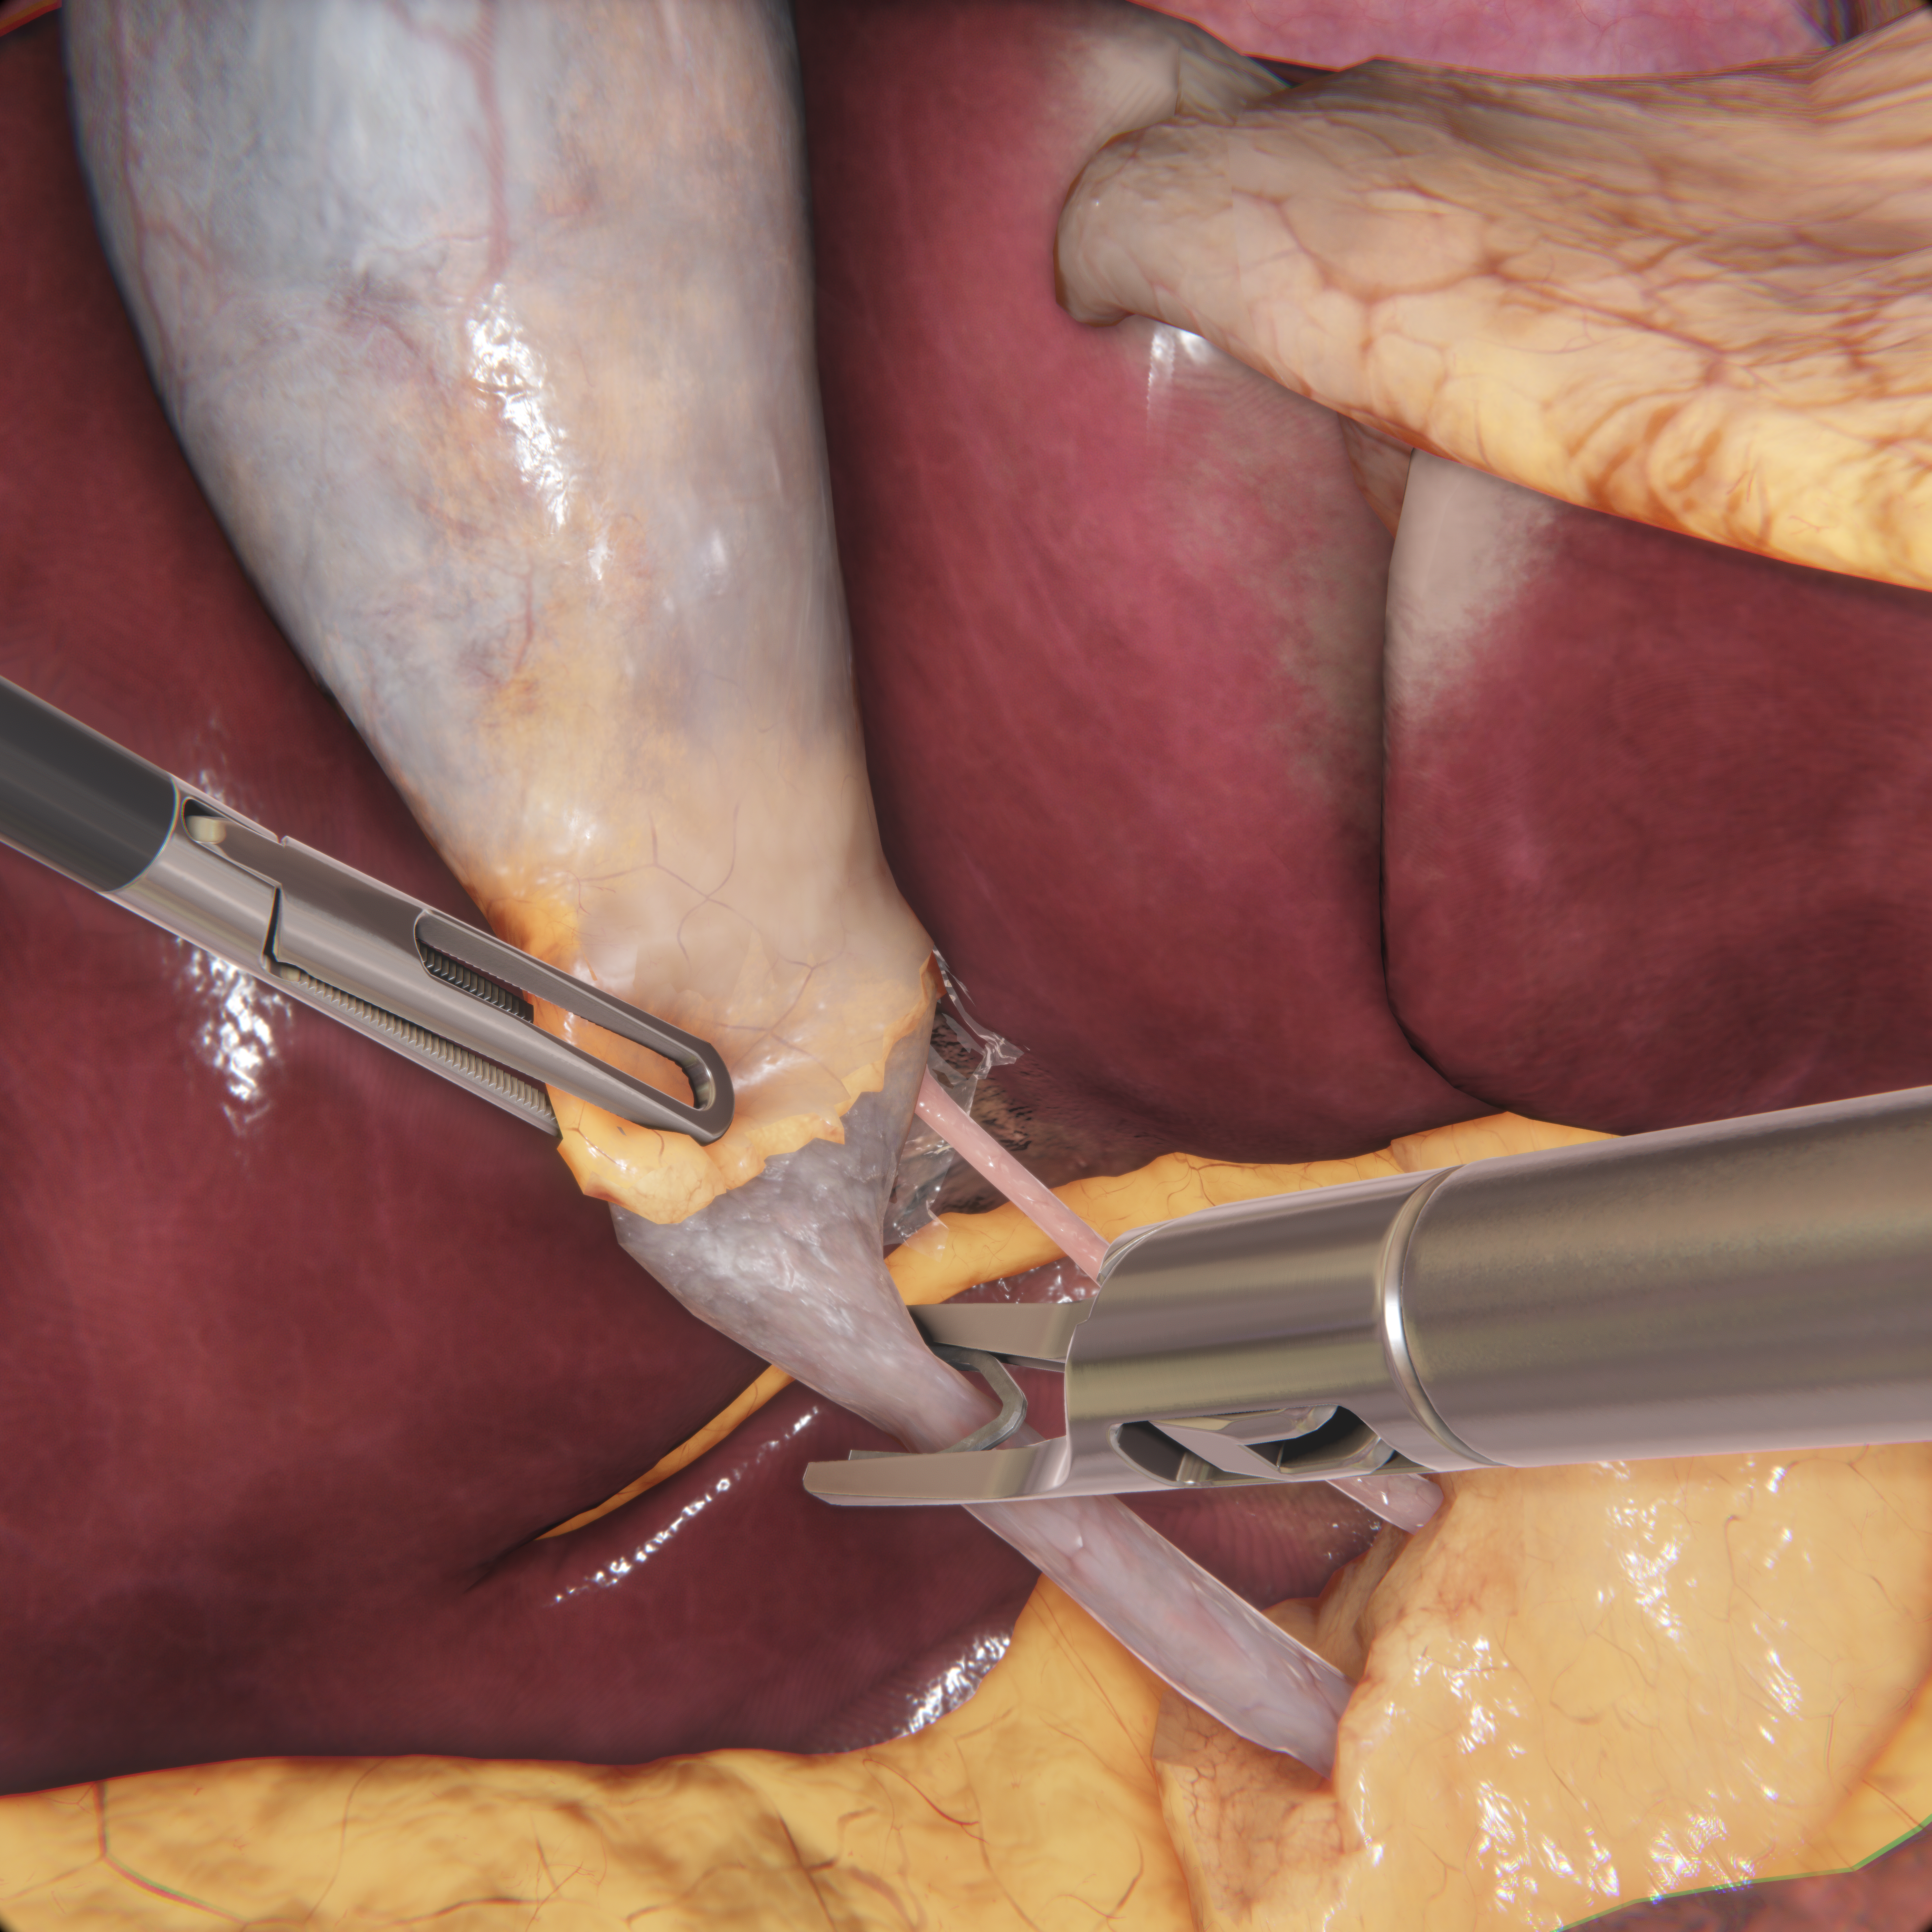 Image of laparoscopic surgery training